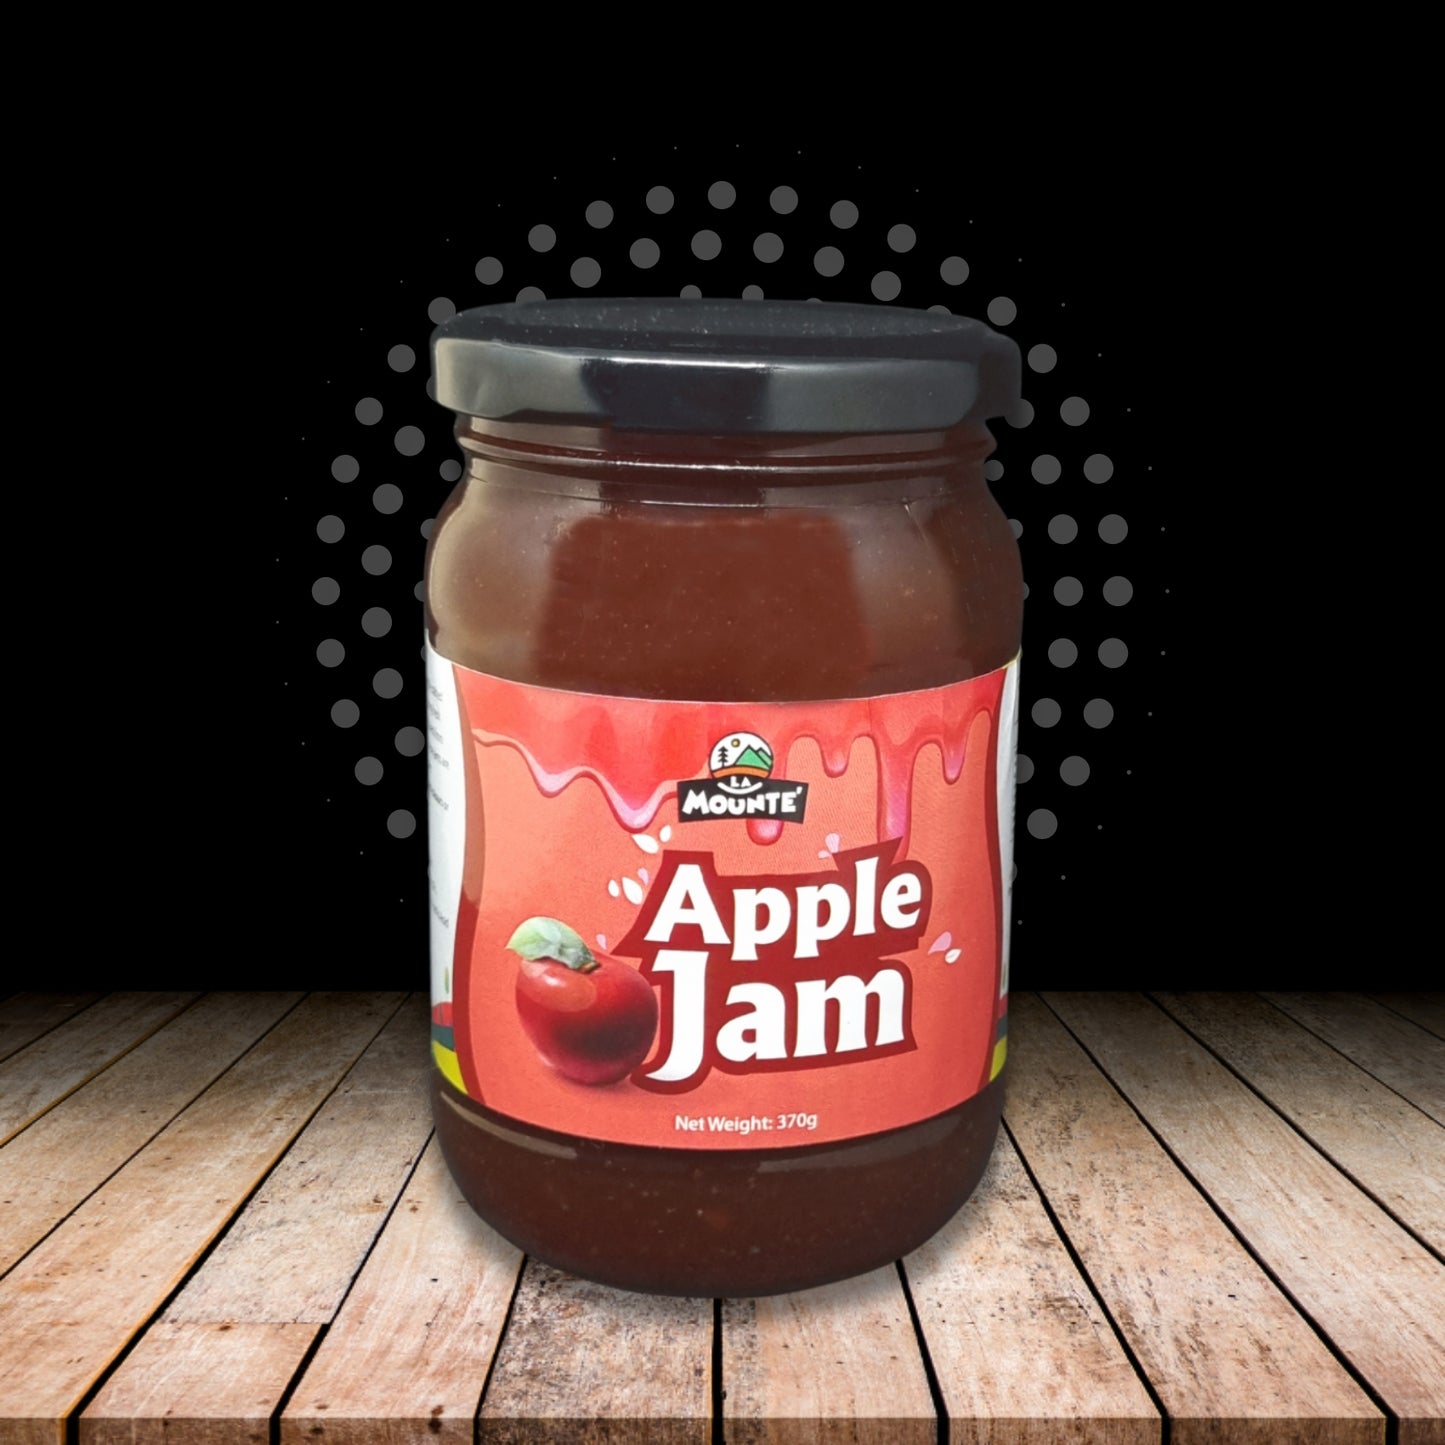 La Mounté Apple Jam